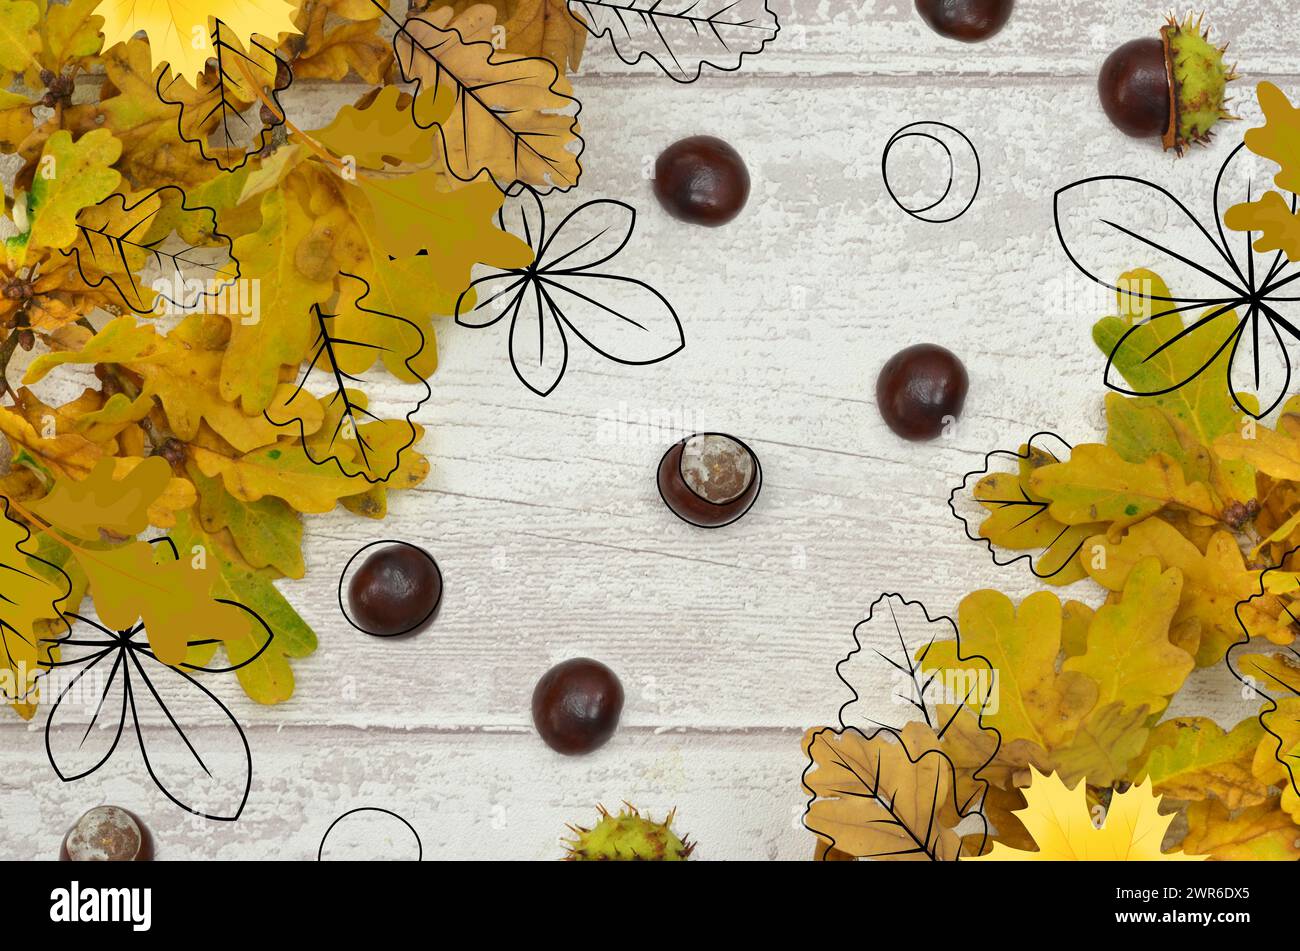 Autunno, autunno: Schizzi di foglie gialle, castagne e foglie su uno sfondo di legno chiaro. Foto Stock